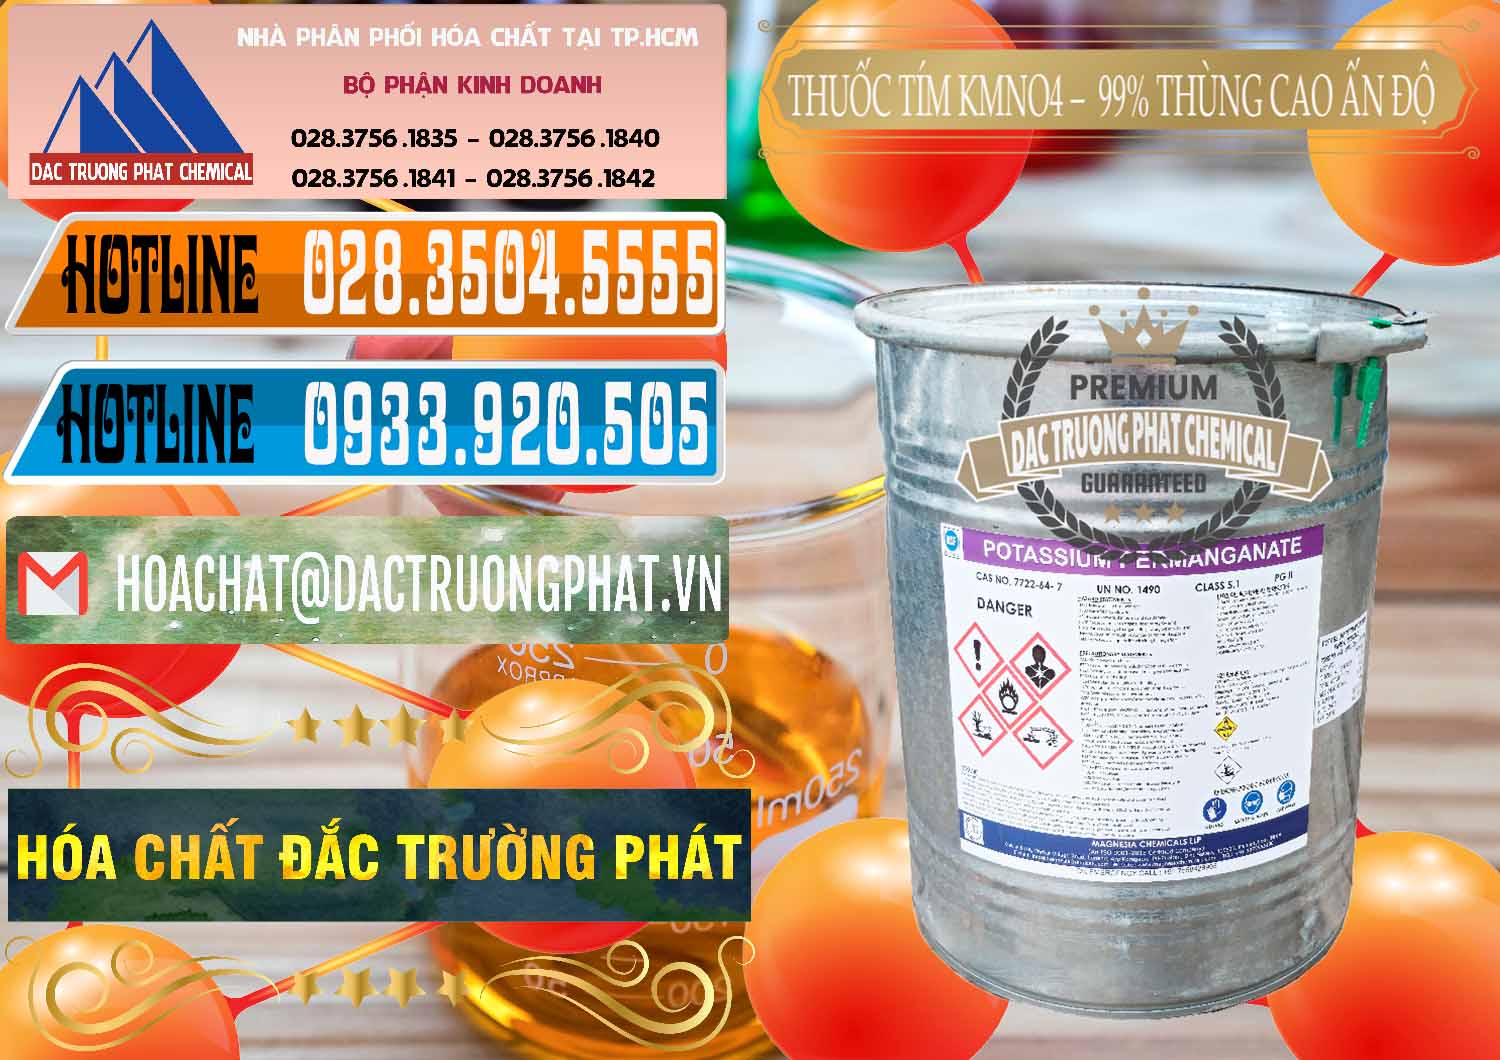 Đơn vị chuyên kinh doanh ( bán ) Thuốc Tím - KMNO4 Thùng Cao 99% Magnesia Chemicals Ấn Độ India - 0164 - Nơi cung cấp & bán hóa chất tại TP.HCM - stmp.net